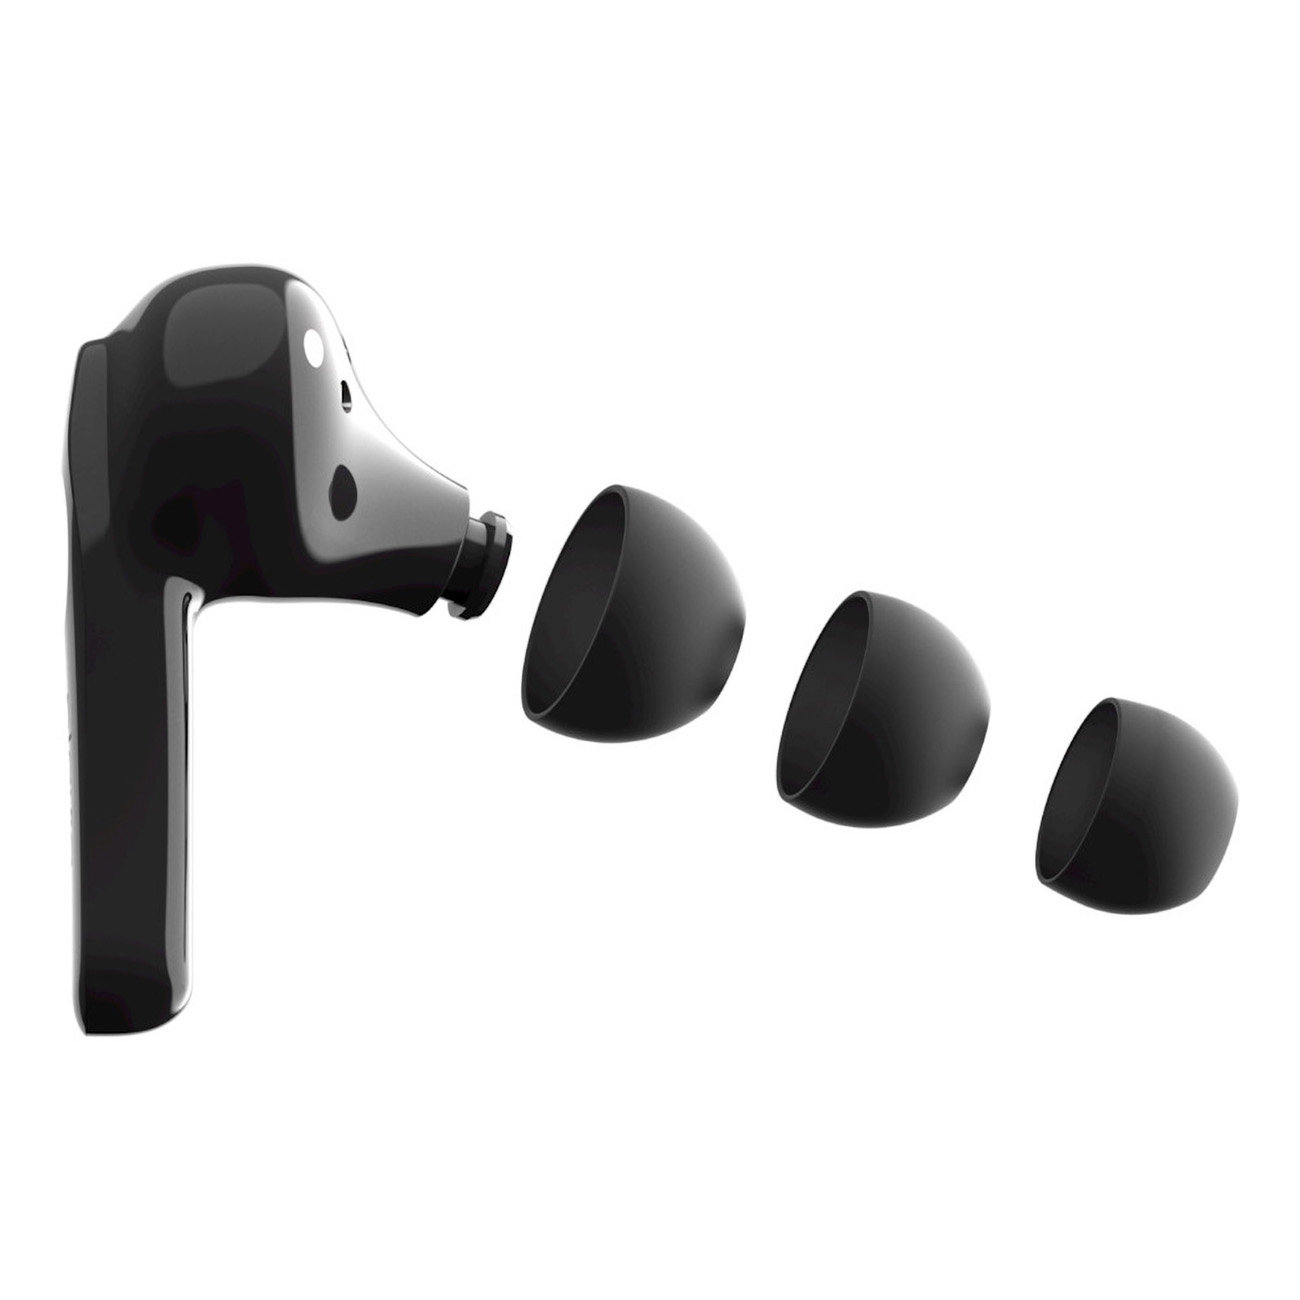 BELKIN Soundform Plus, Bluetooth Move schwarz In-ear Kopfhörer